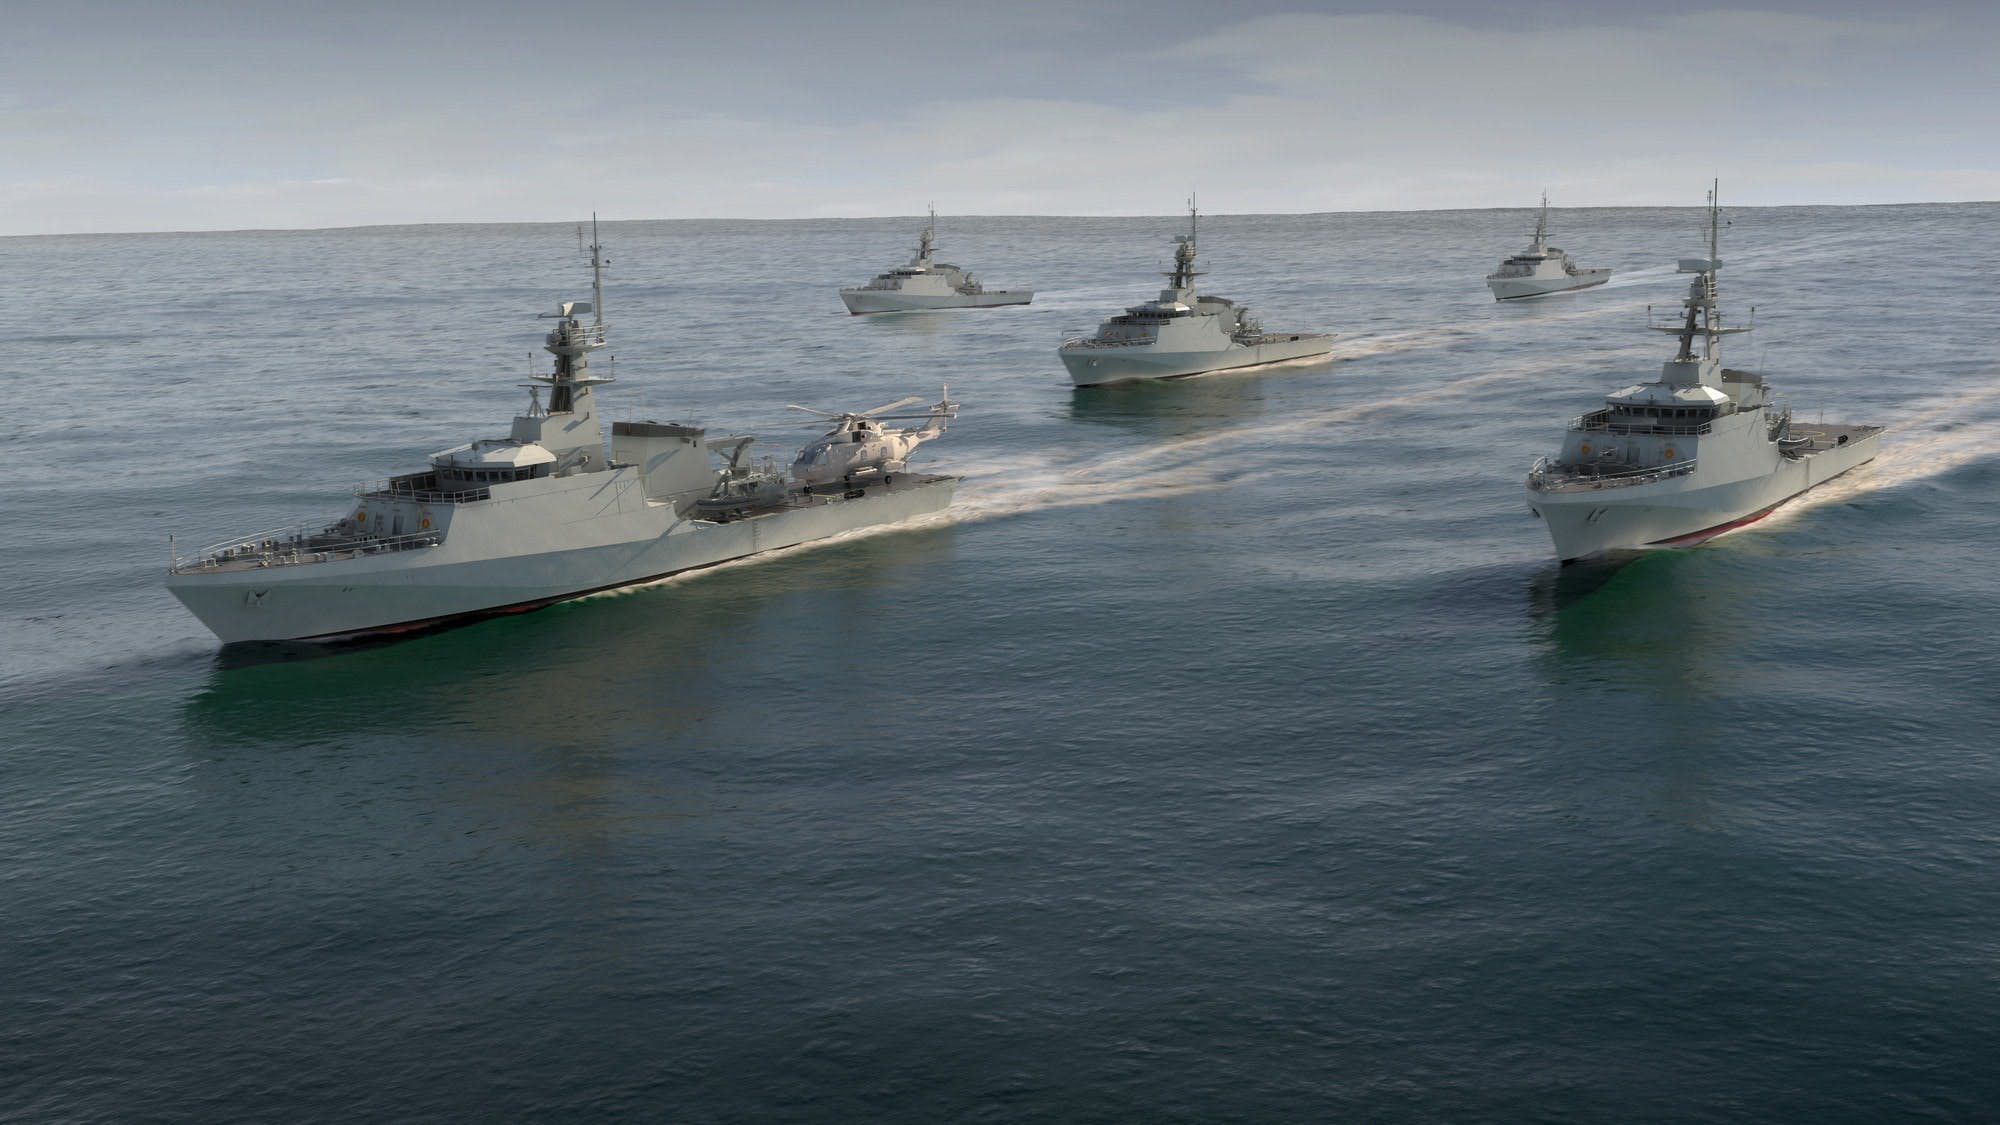 Σε επιφυλακή στολίσκος τεσσάρων σκαφών του Βρετανικού Ναυτικού για την επιτήρηση των συμφωνιών του Brexit